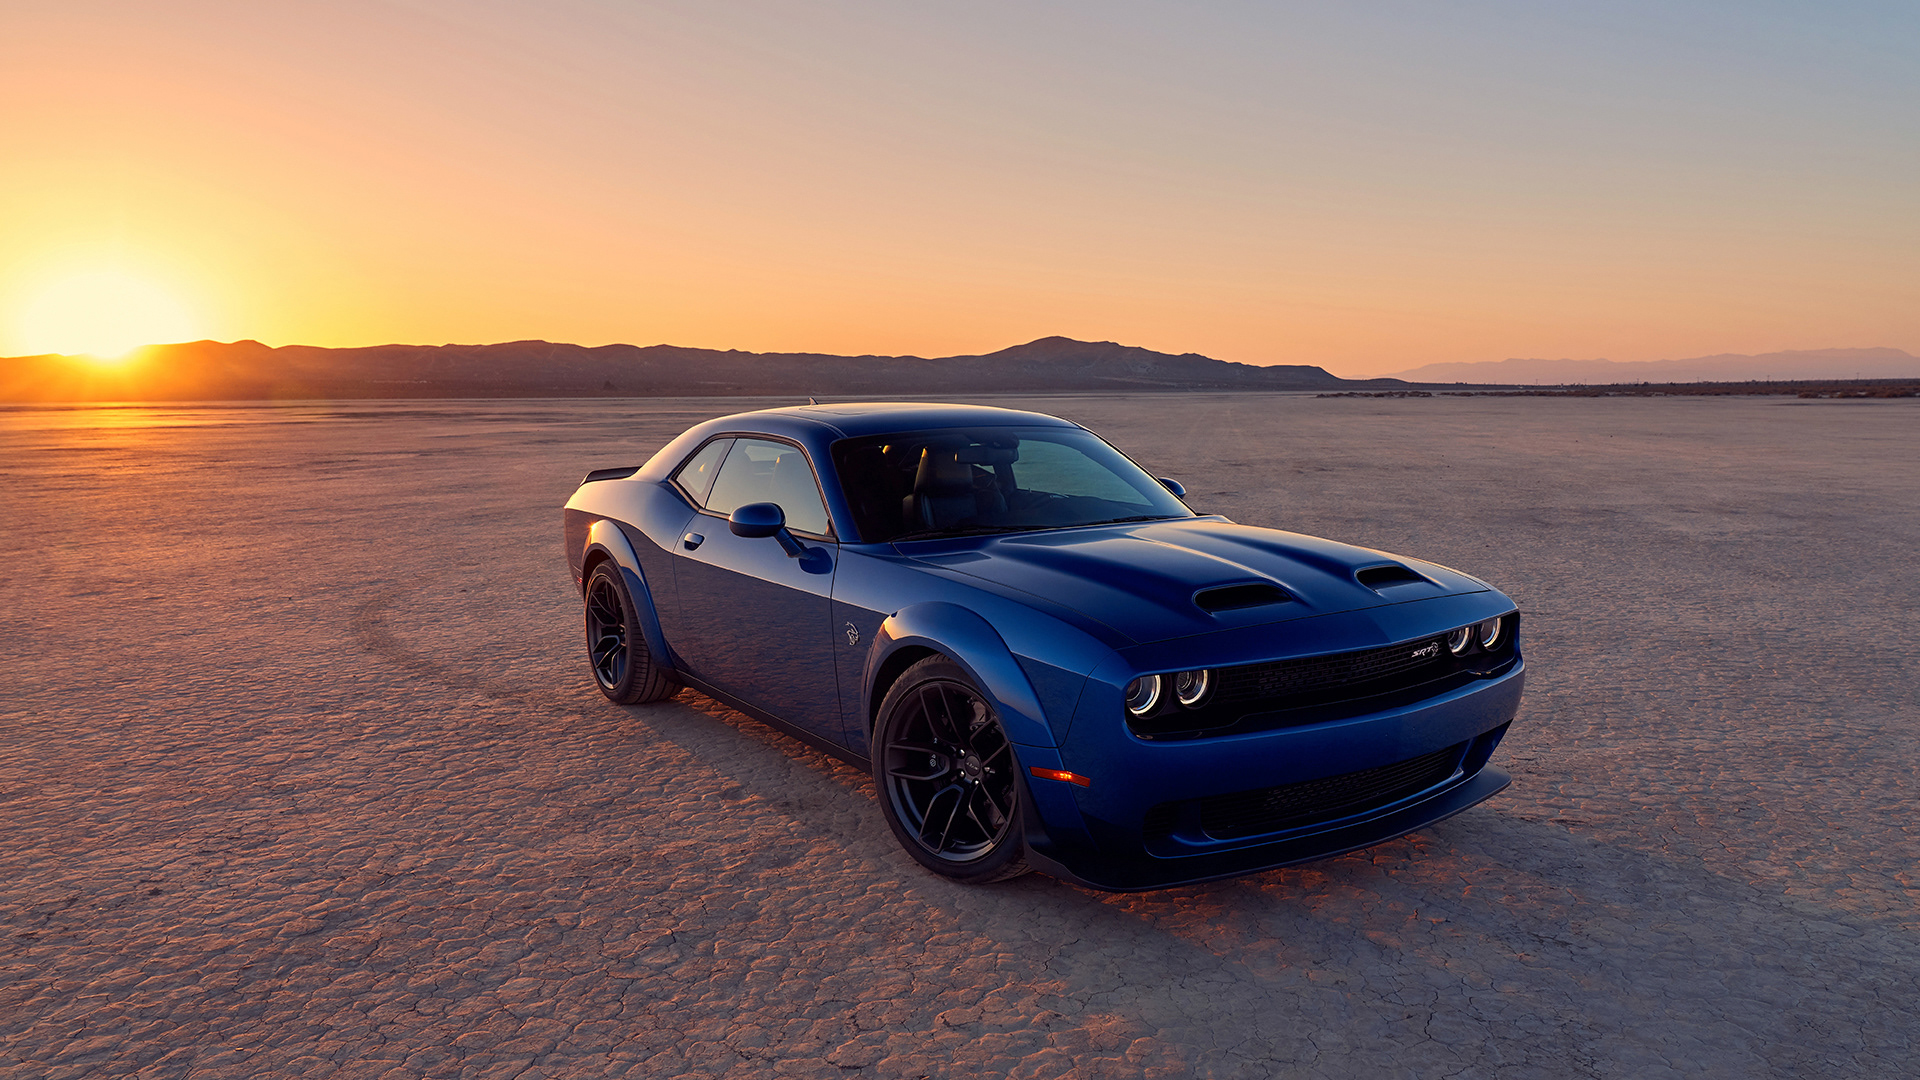 Download mobile wallpaper Sunset, Desert, Dodge, Dodge Challenger Srt, Vehicles, Dodge Challenger Srt Hellcat for free.